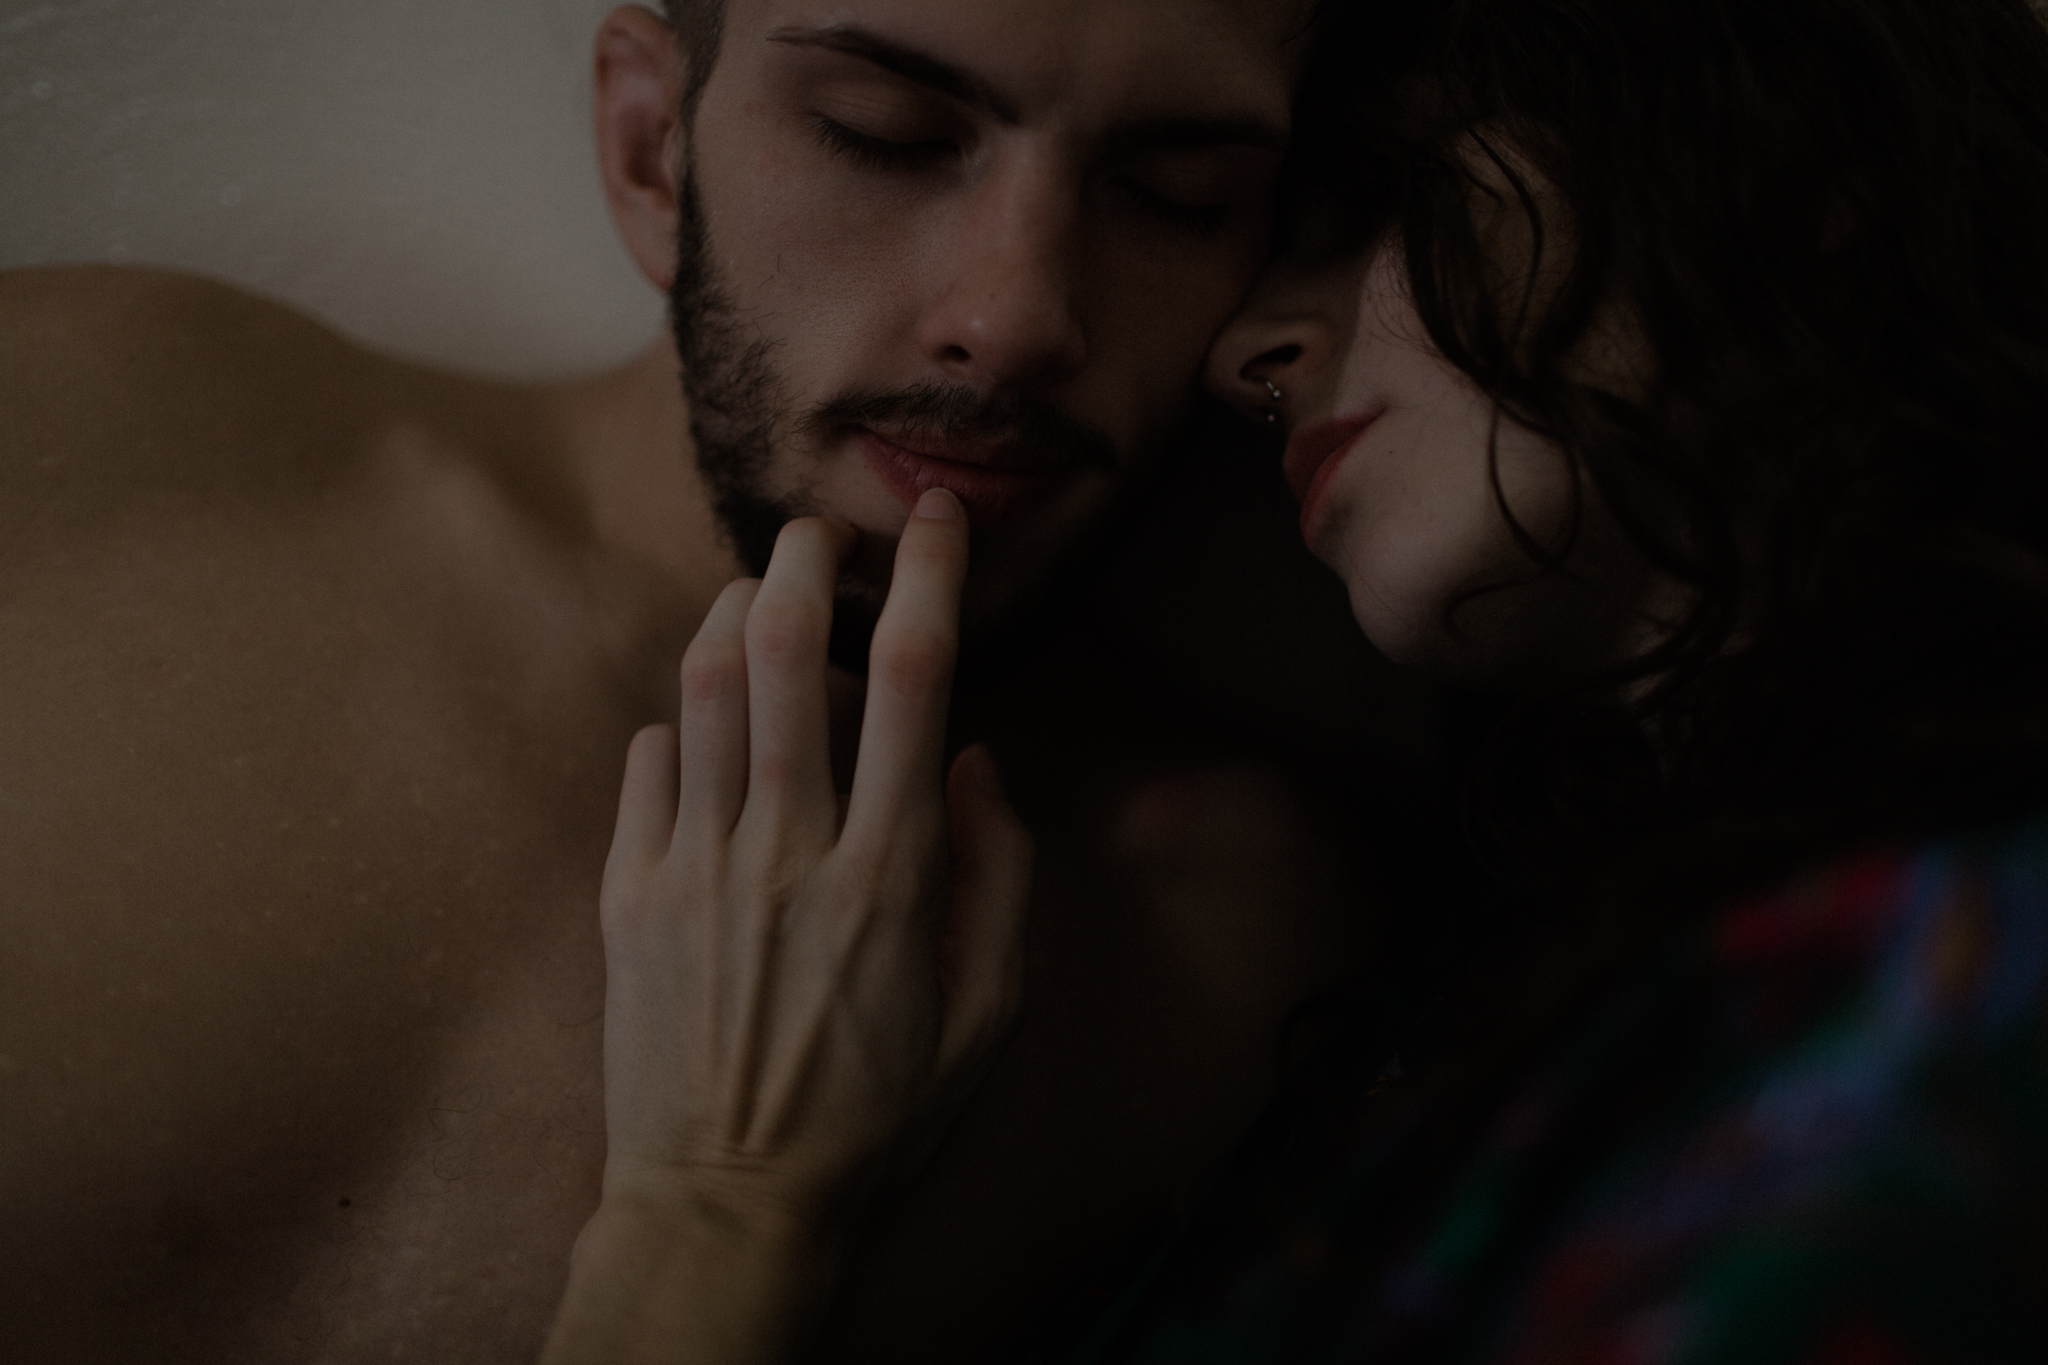 dark moody couples boudoir photography ohio